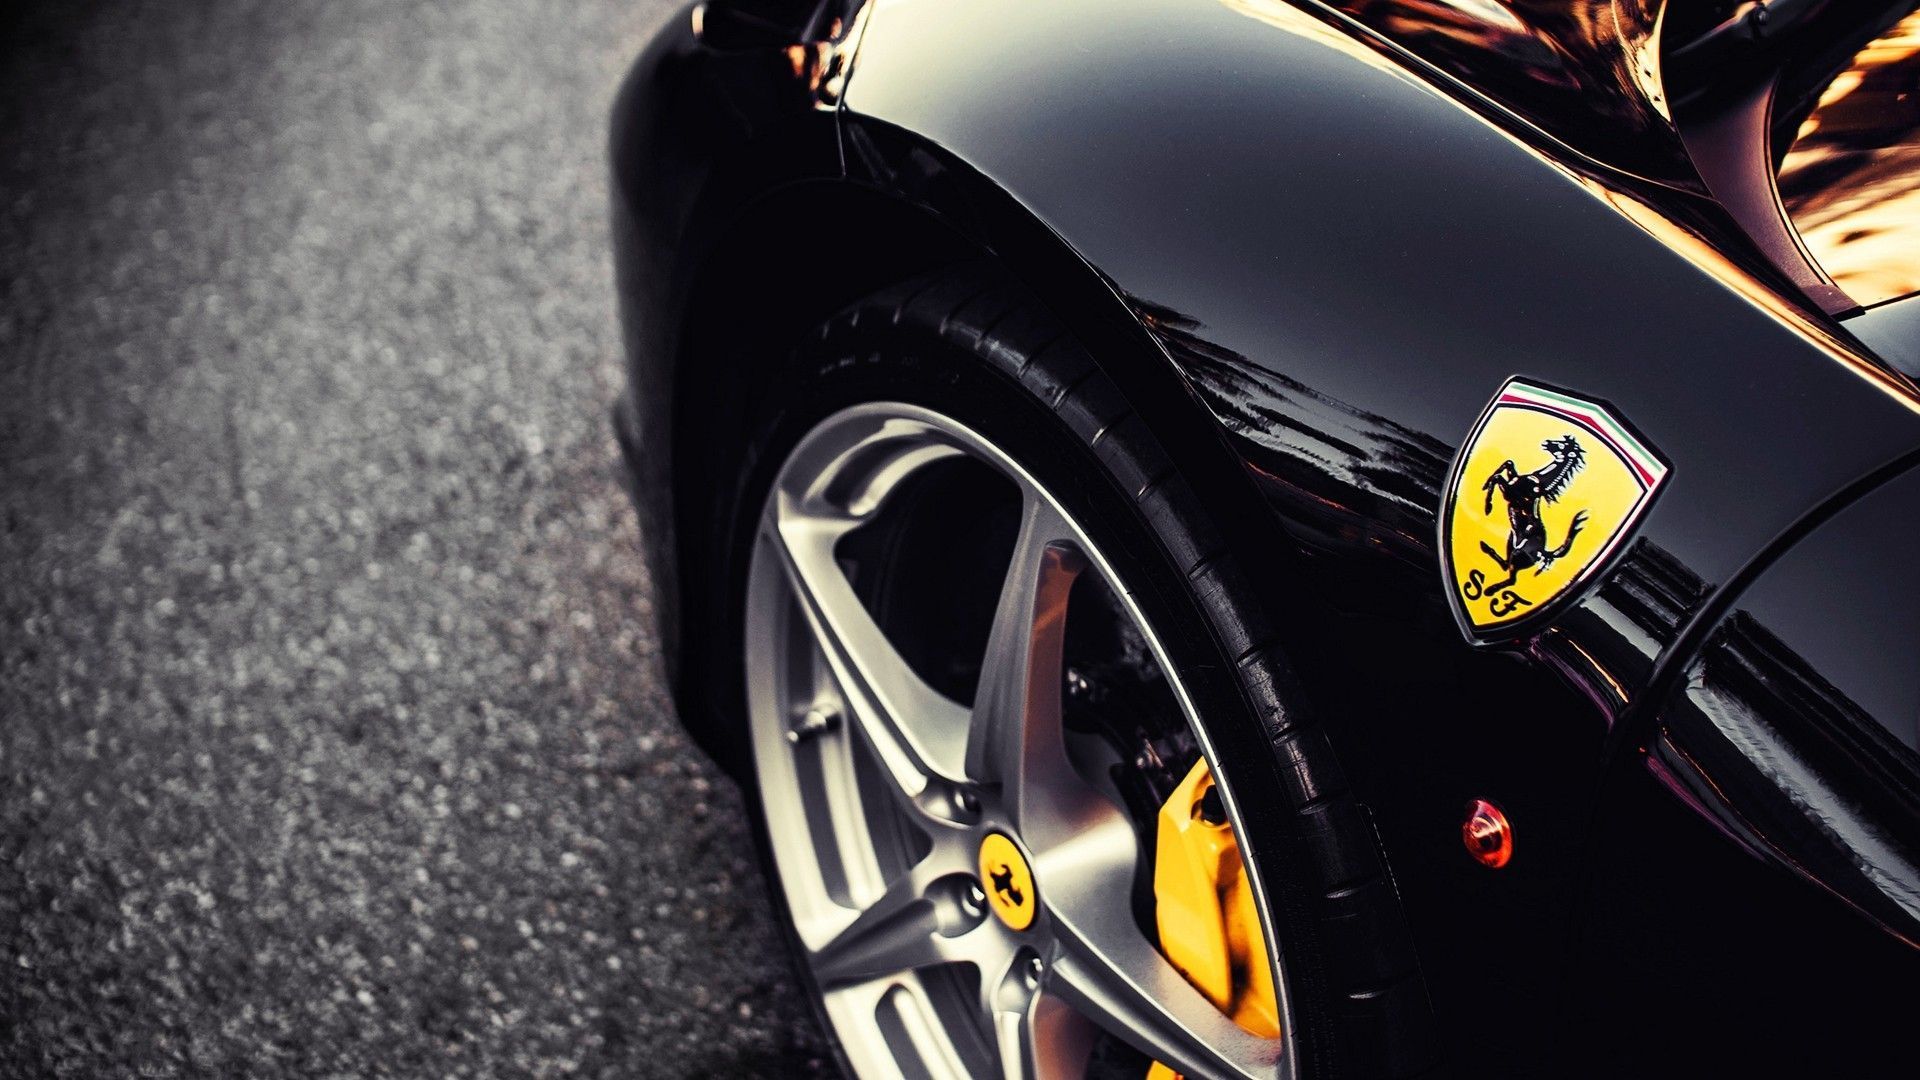 Picture 2016, Ferrari Emblem HD 1080p Wallpapers Download - Cars